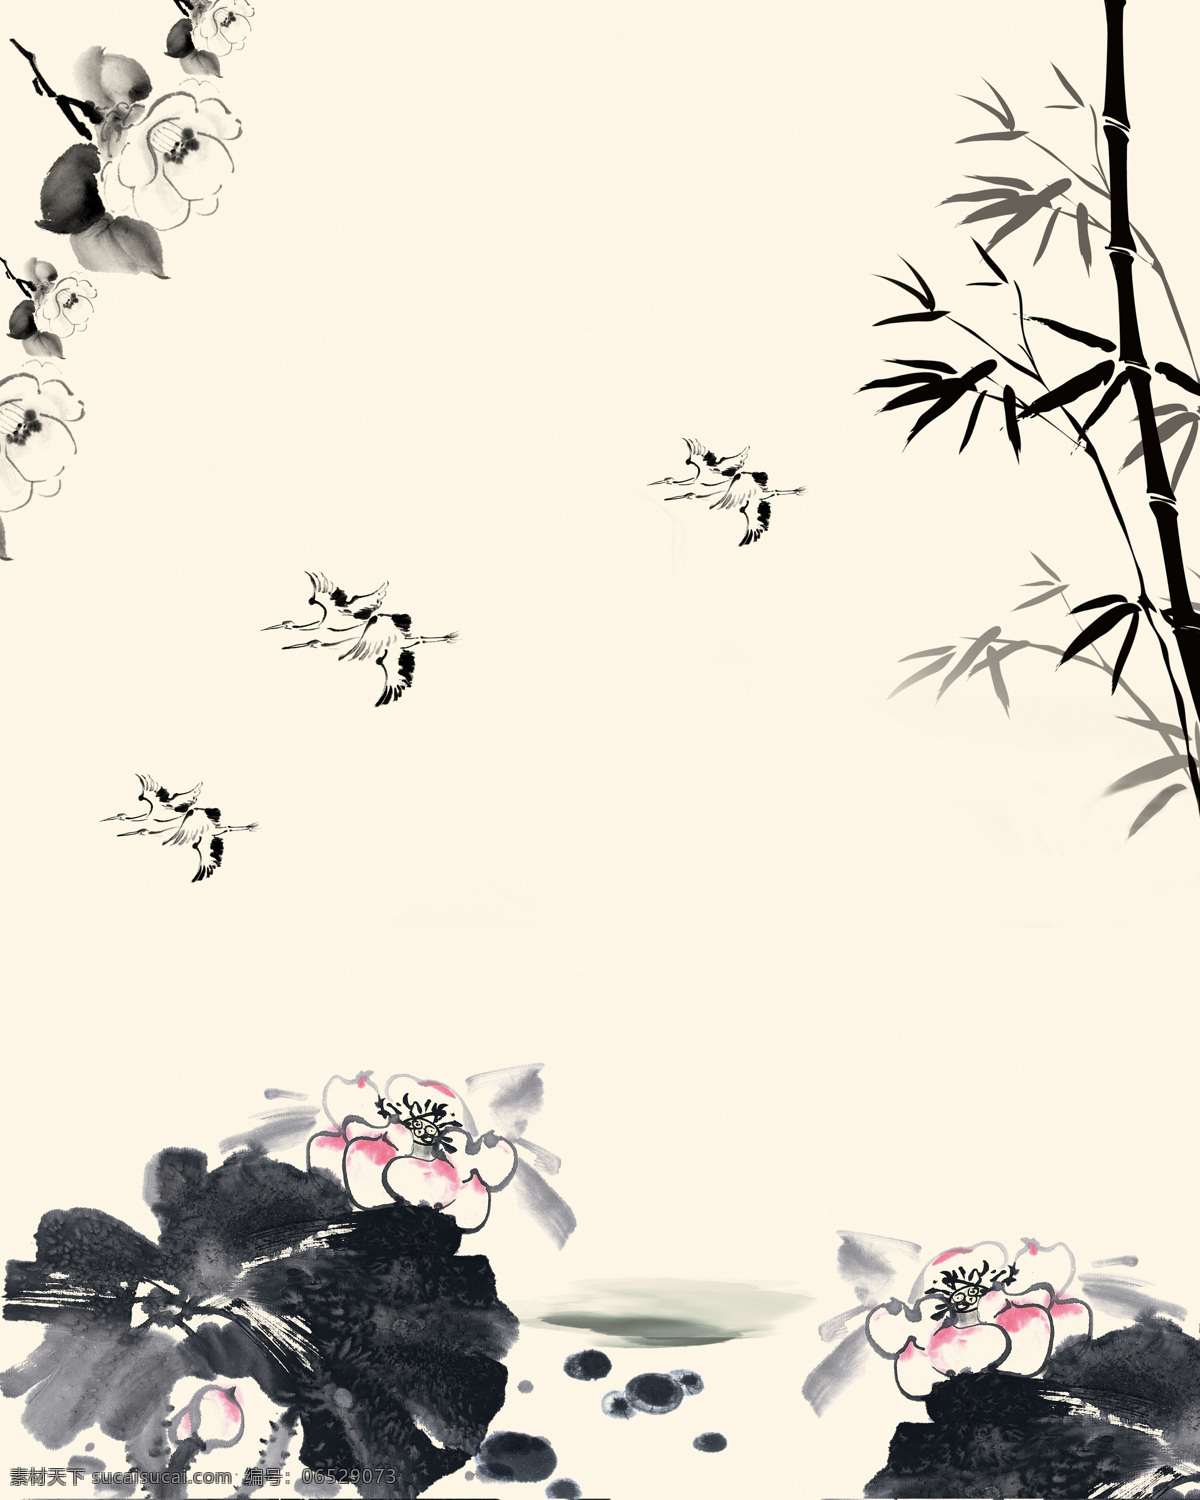 荷花 竹子 花朵 鸟 绘画 书法 水墨 中国风 古典 移门 设计素材 古典背景 移门图案 底纹边框